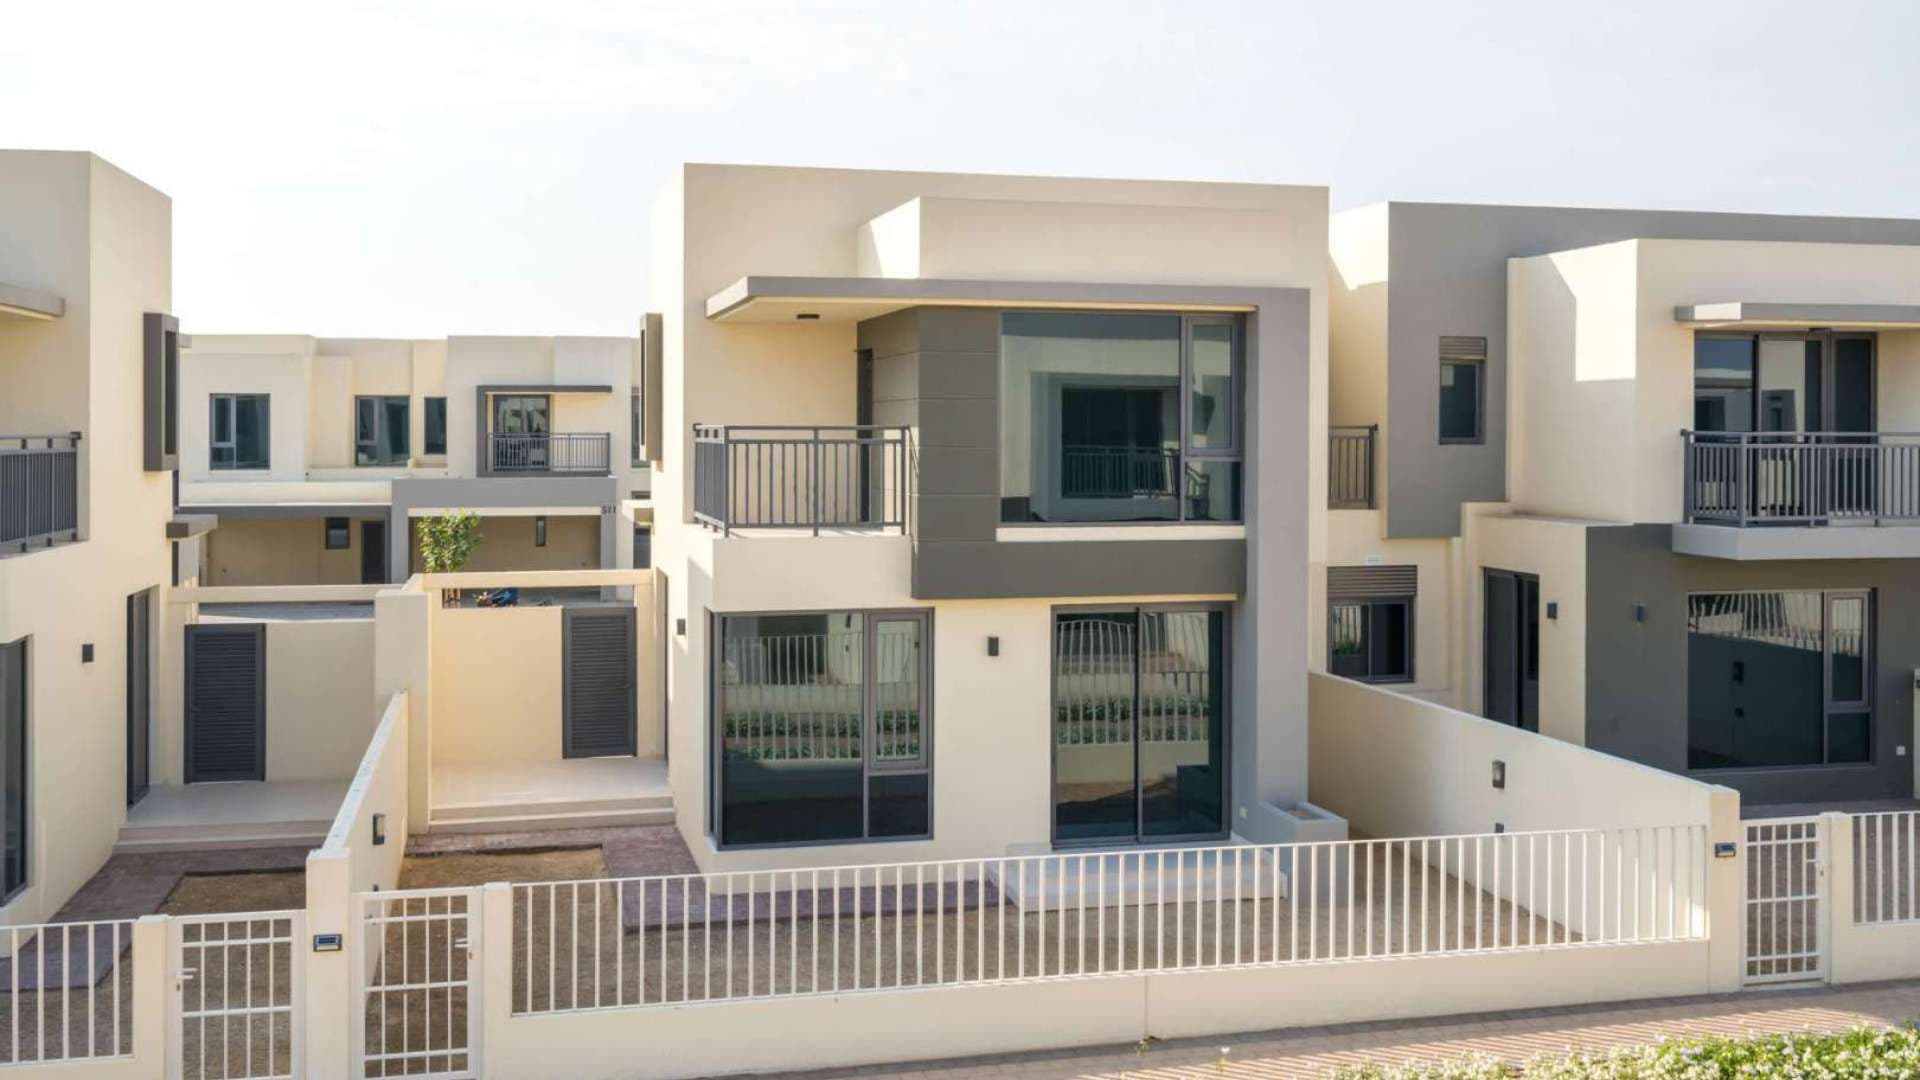 4 Bedroom Townhouse For Sale Maple At Dubai Hills Estate Lp07821 25d9622922d18a00.jpg